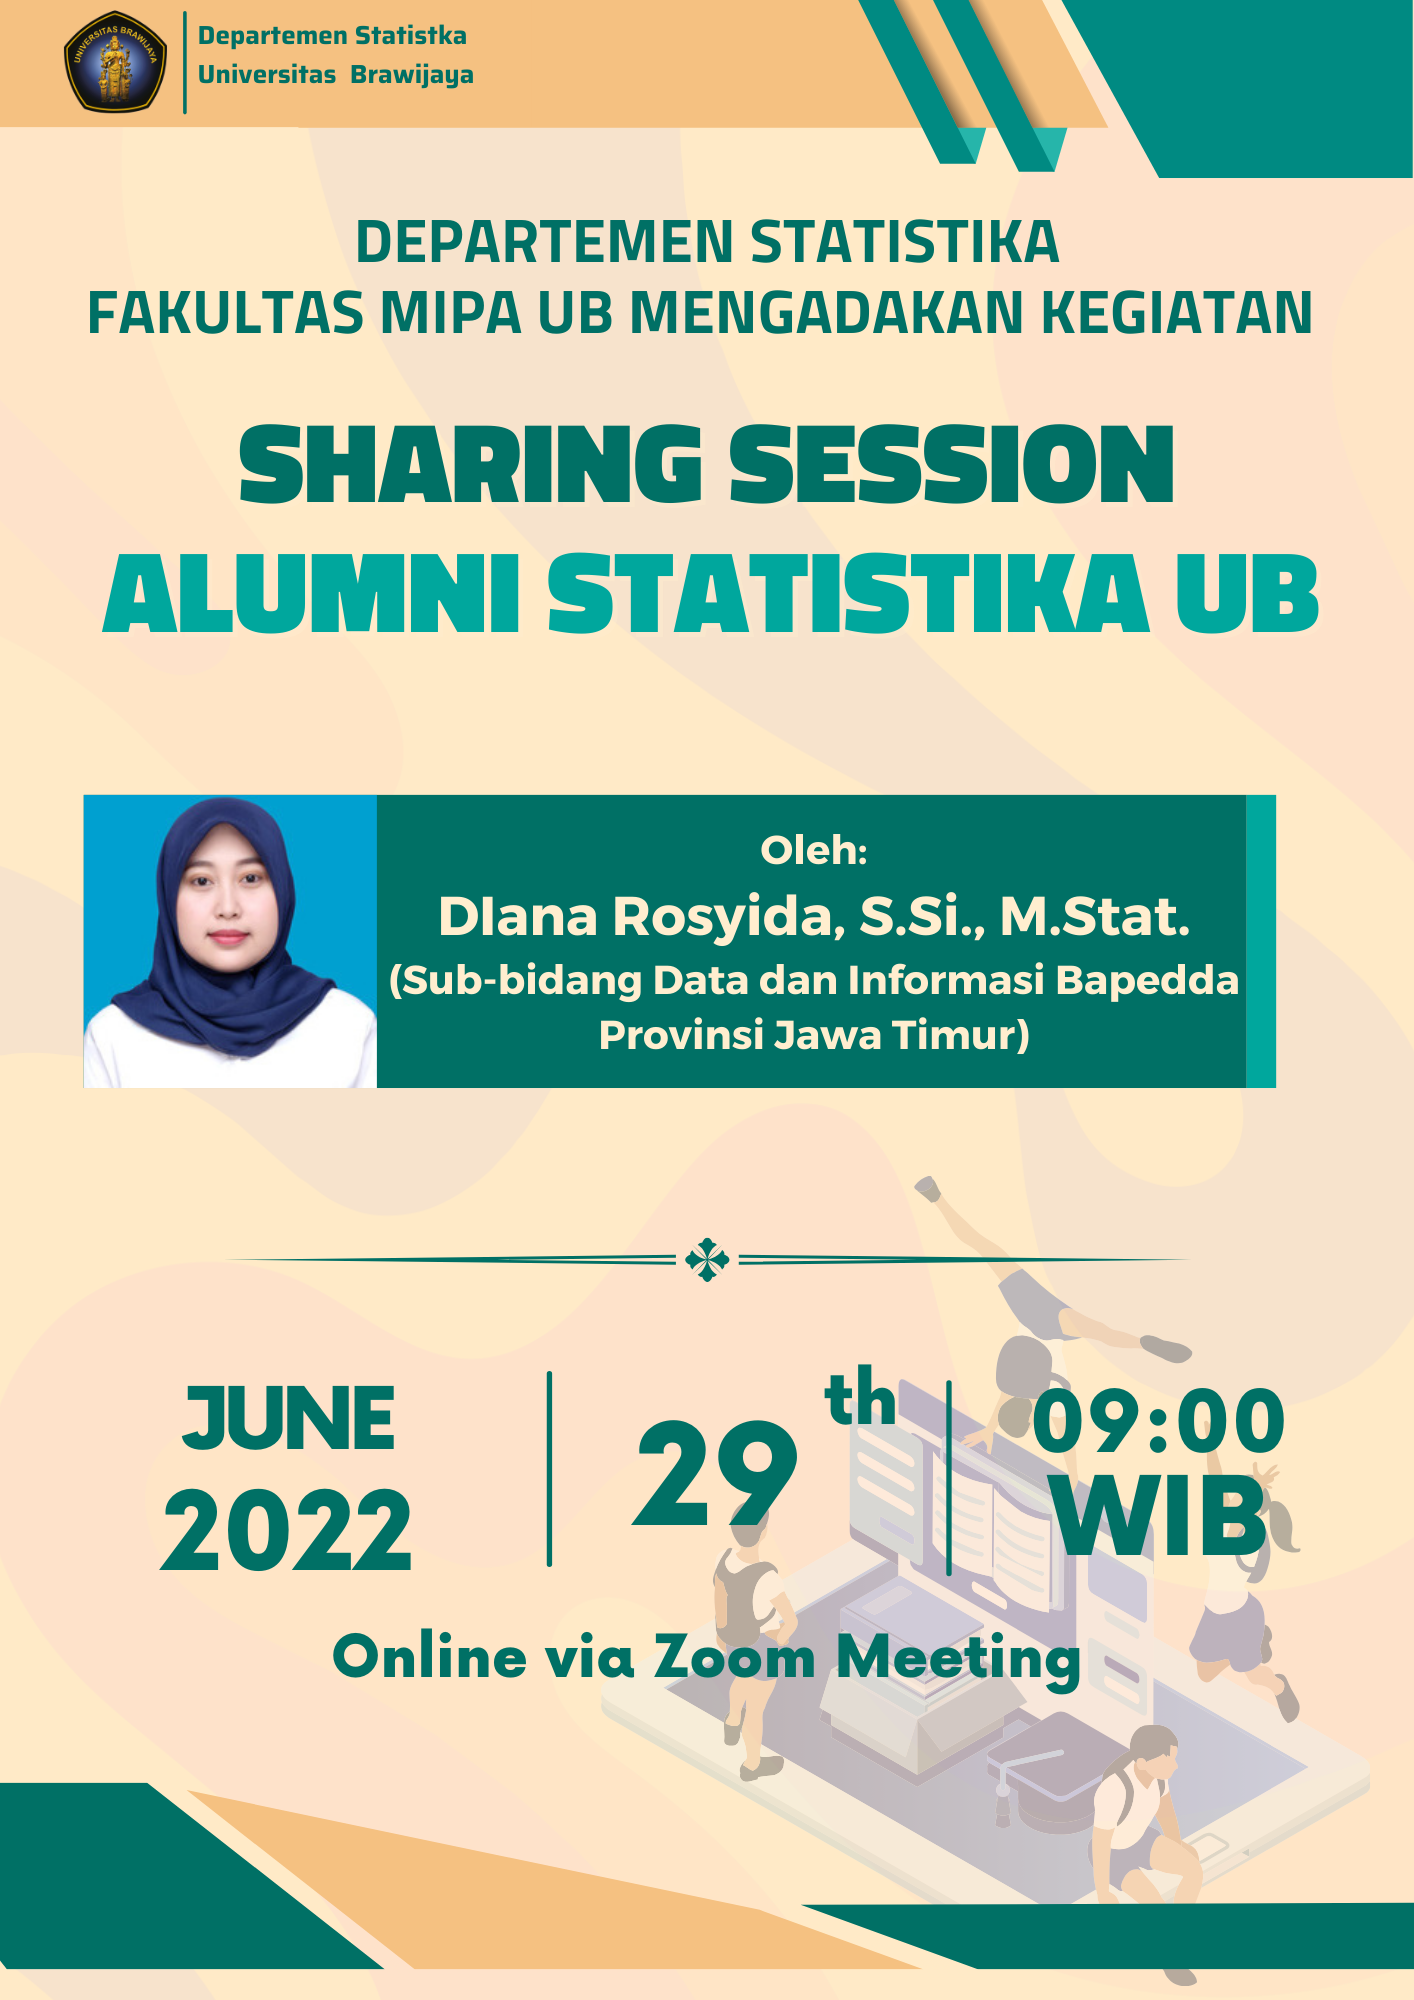 Sharing Session Alumni Statistika UB oleh Diana Rosyida, S.Si., M.Stat